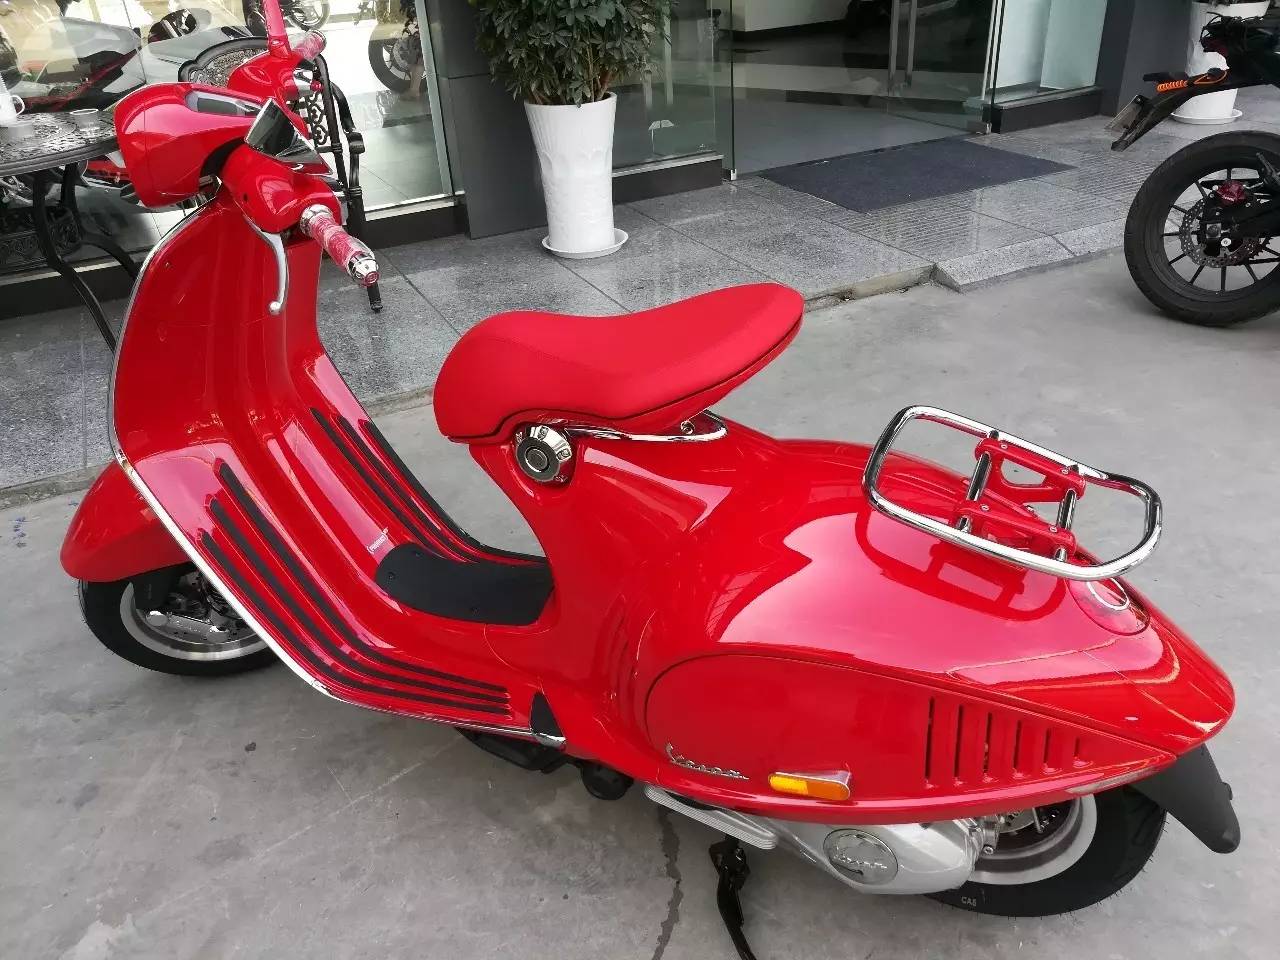 【贵州首台】世界上最红踏板,只有亲眼所见,才能感受这辆vespa 946